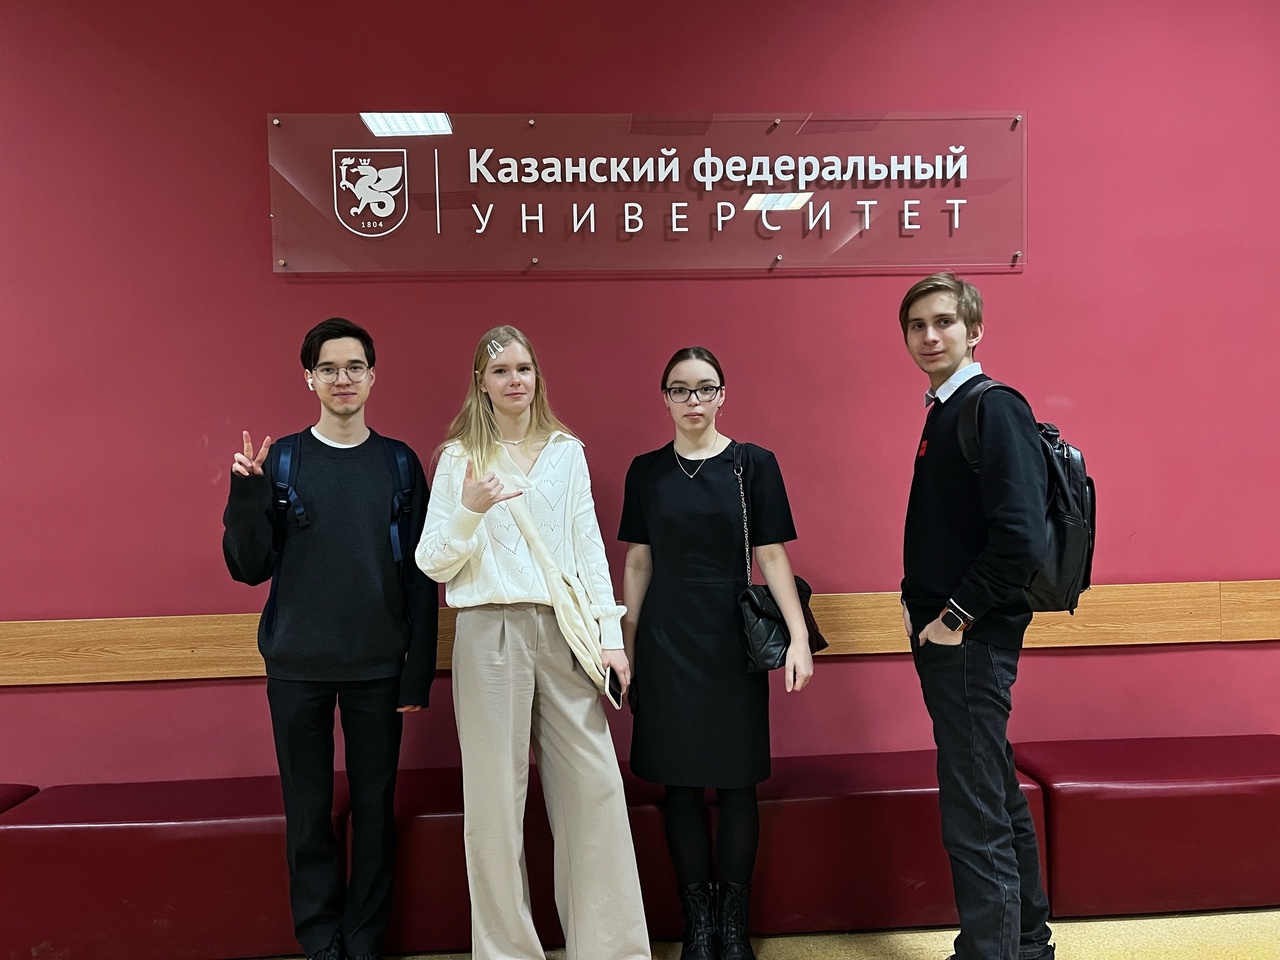 С 1 по 2 марта на базе Института психологии и образования Казанского федерального университета прошла XVIII Зимняя школа по психологии состояний.